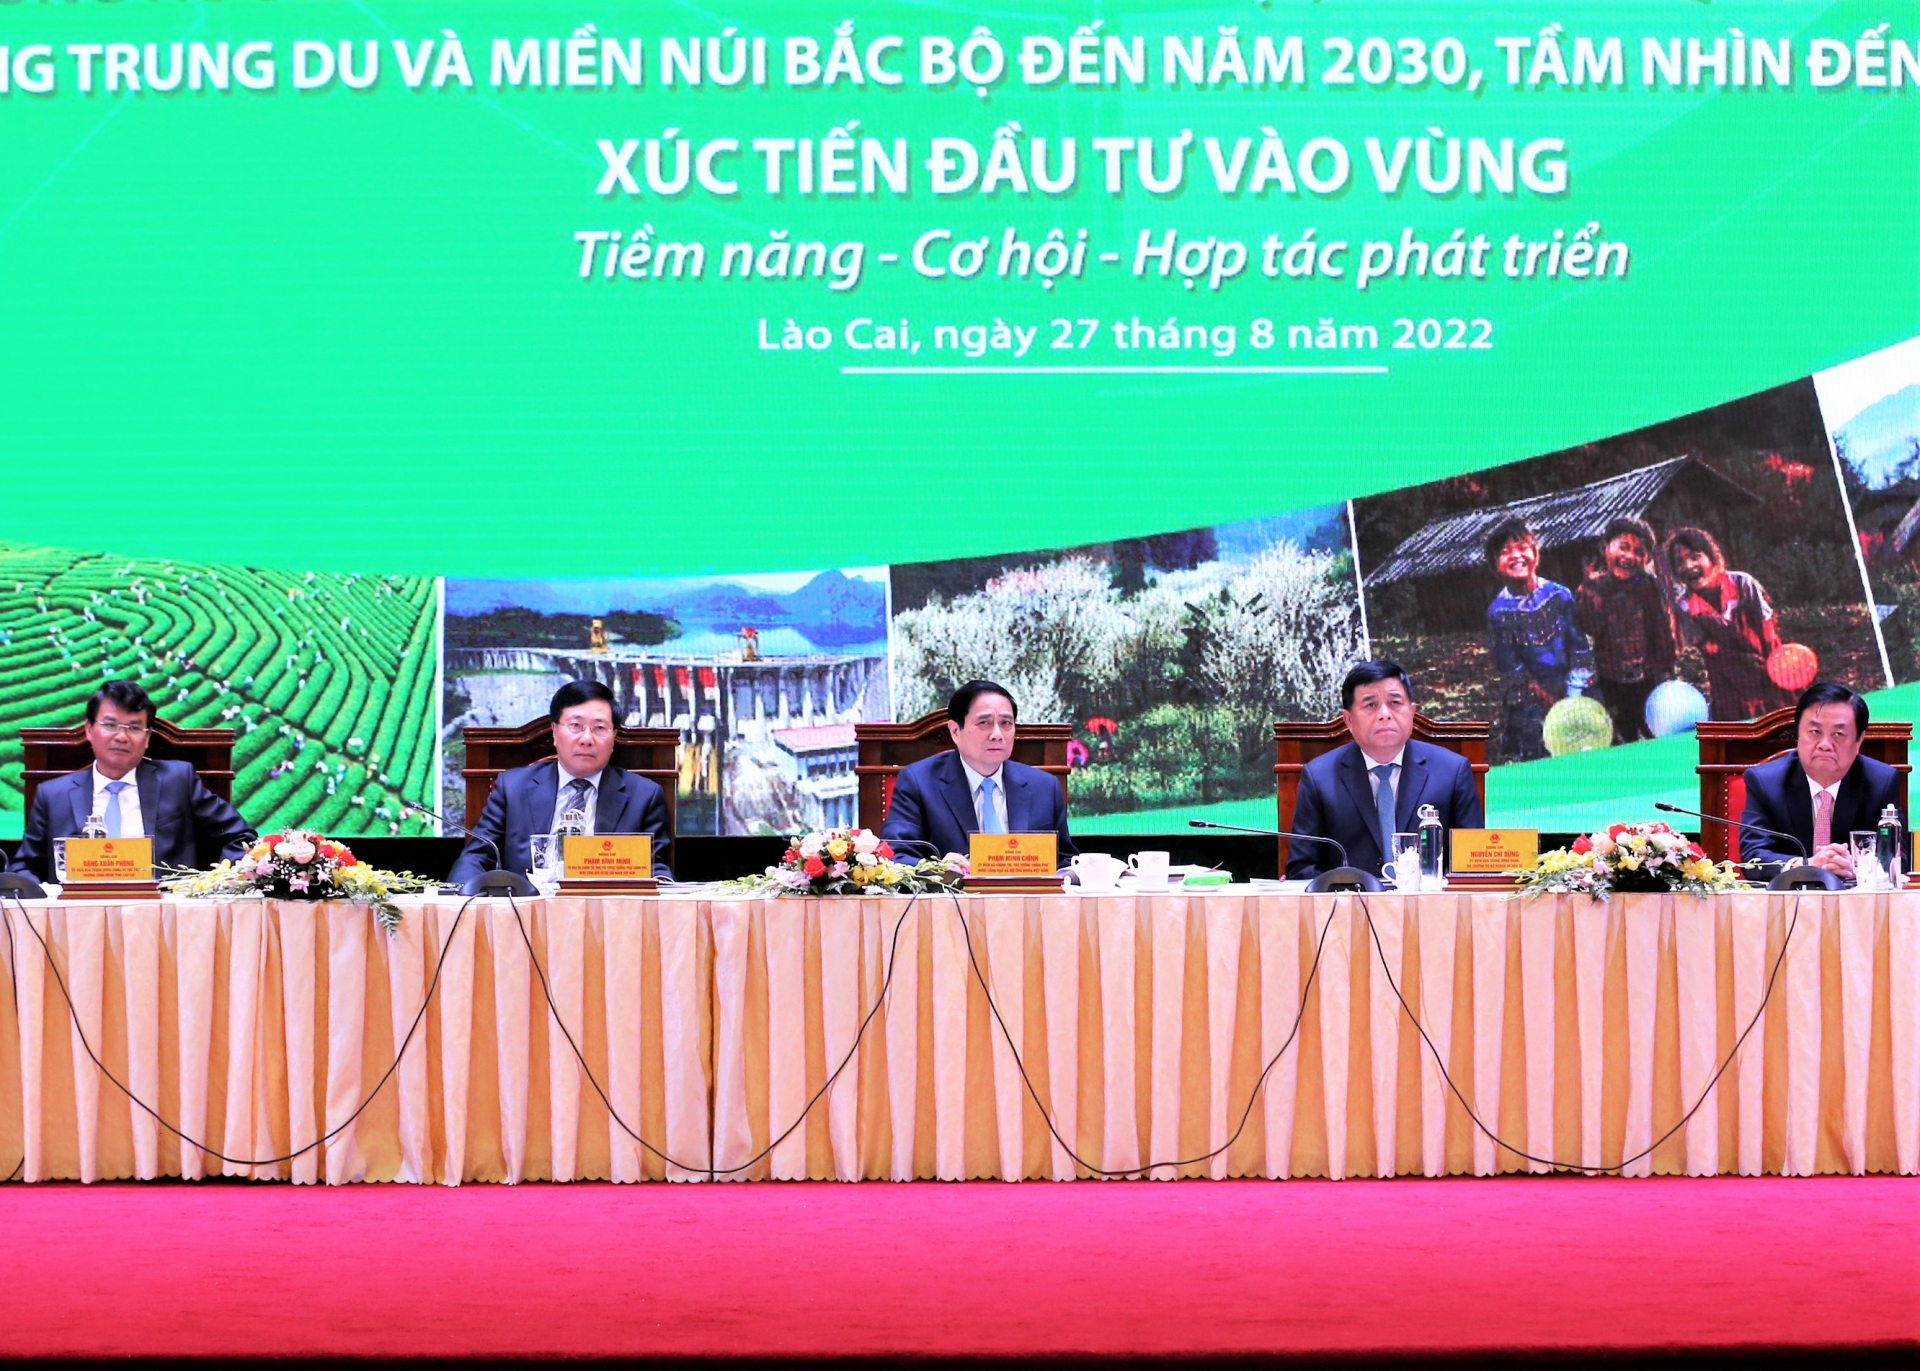 Thủ tướng Chính phủ Phạm Minh Chính, Phó Thủ tướng Thường trực Phạm Bình Minh cùng các đồng chí chủ trì hội nghị